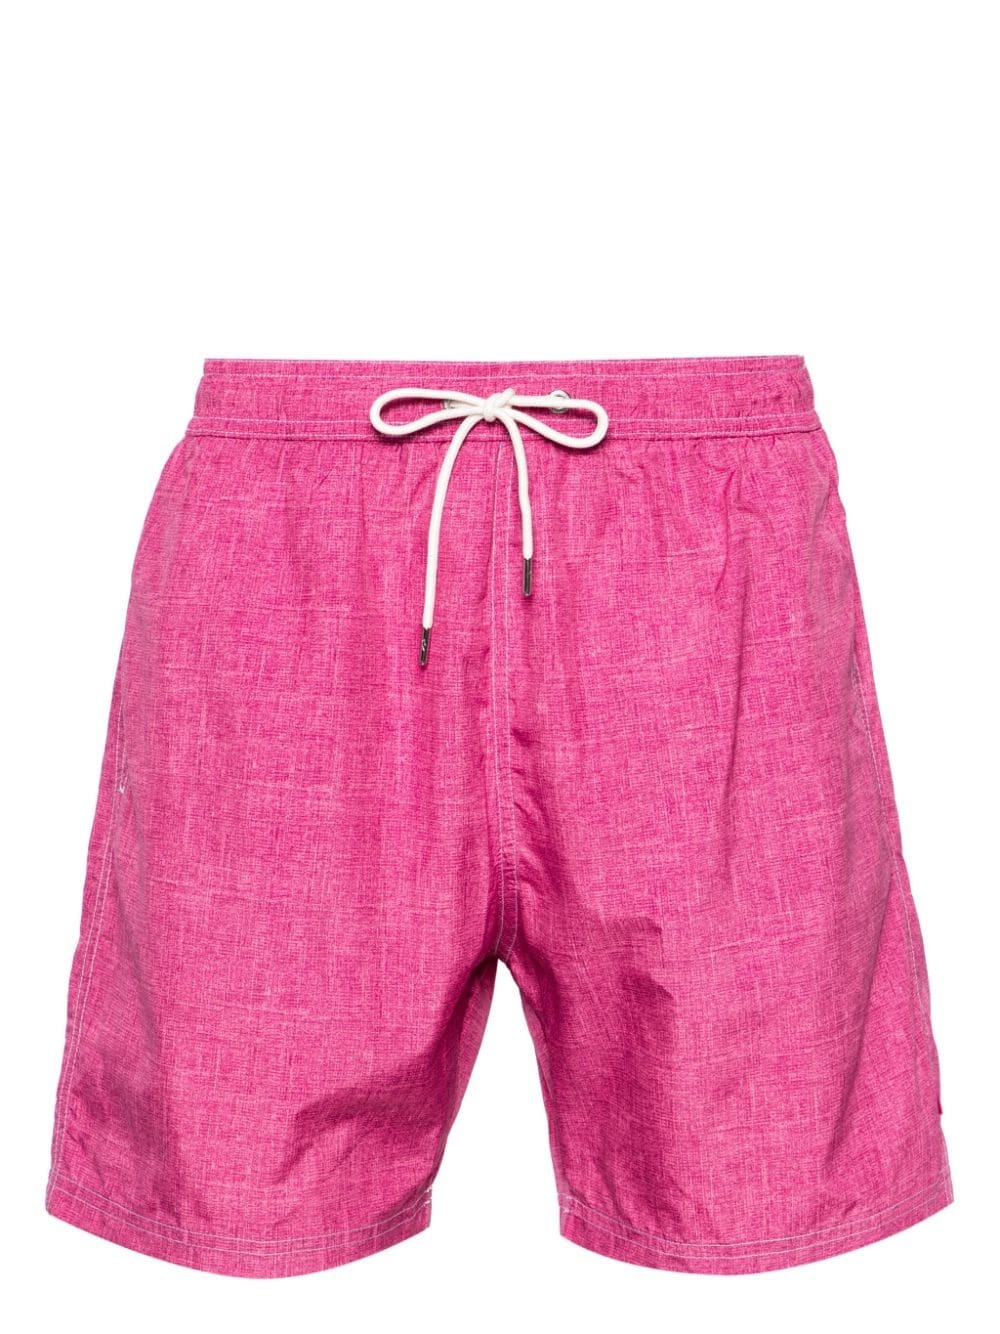 shark-charm textil-print swim shorts - 1